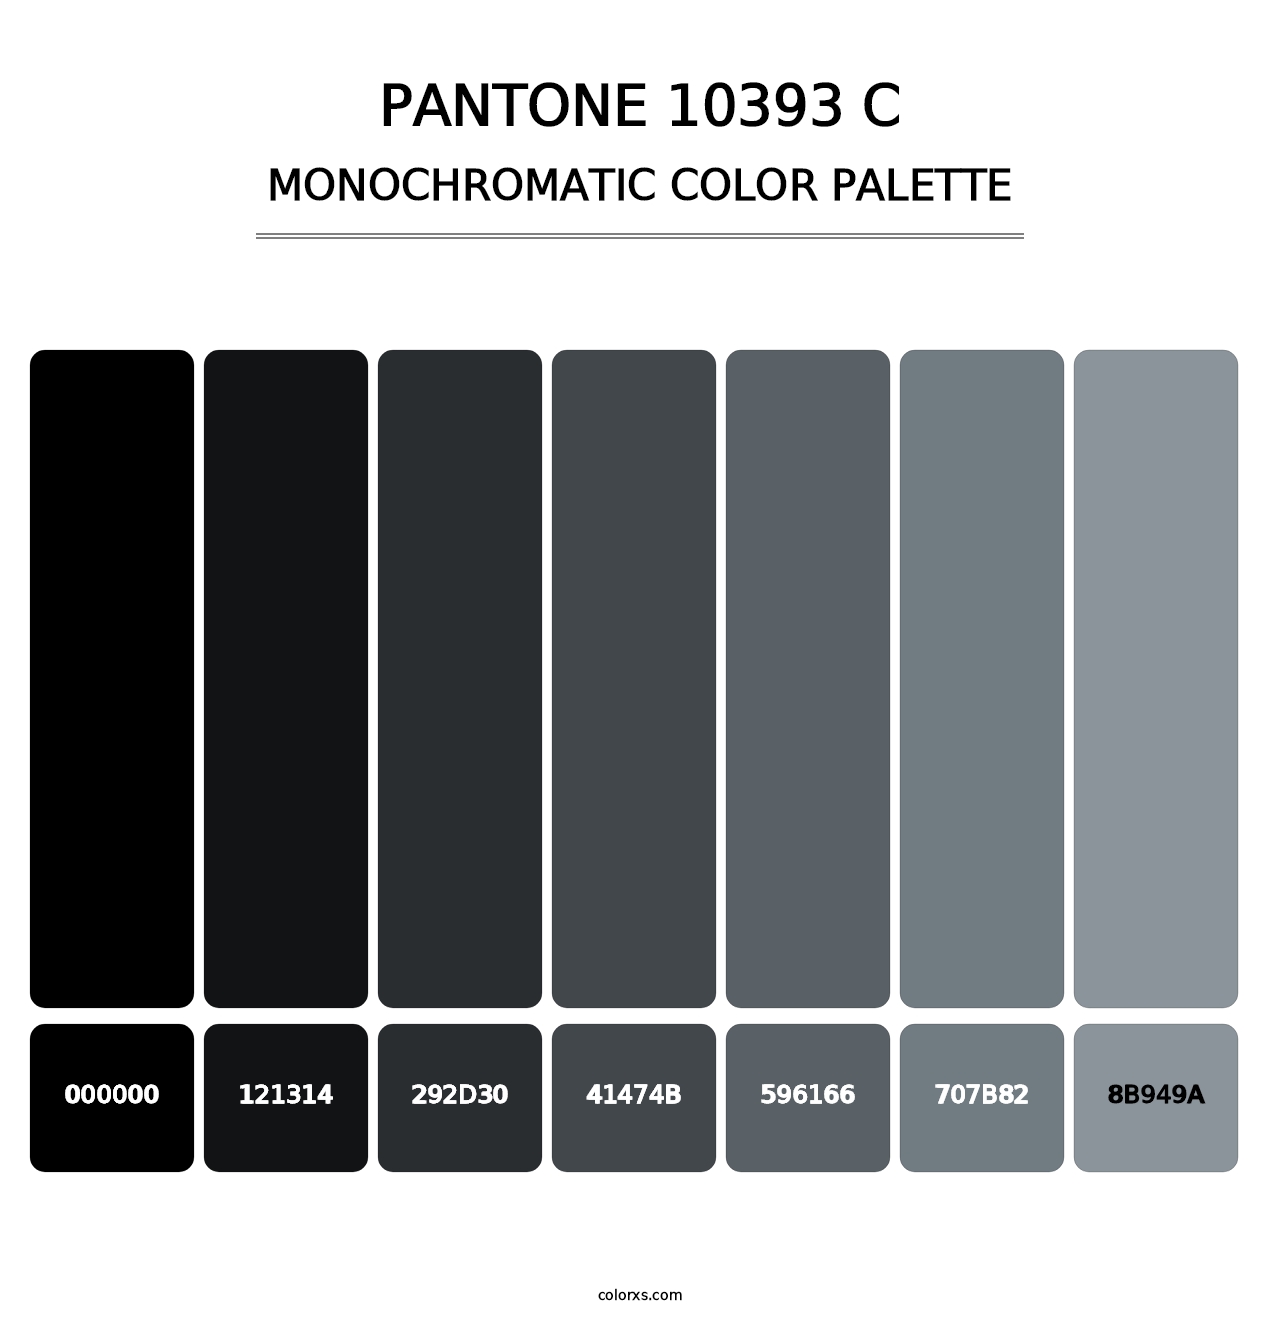 PANTONE 10393 C - Monochromatic Color Palette